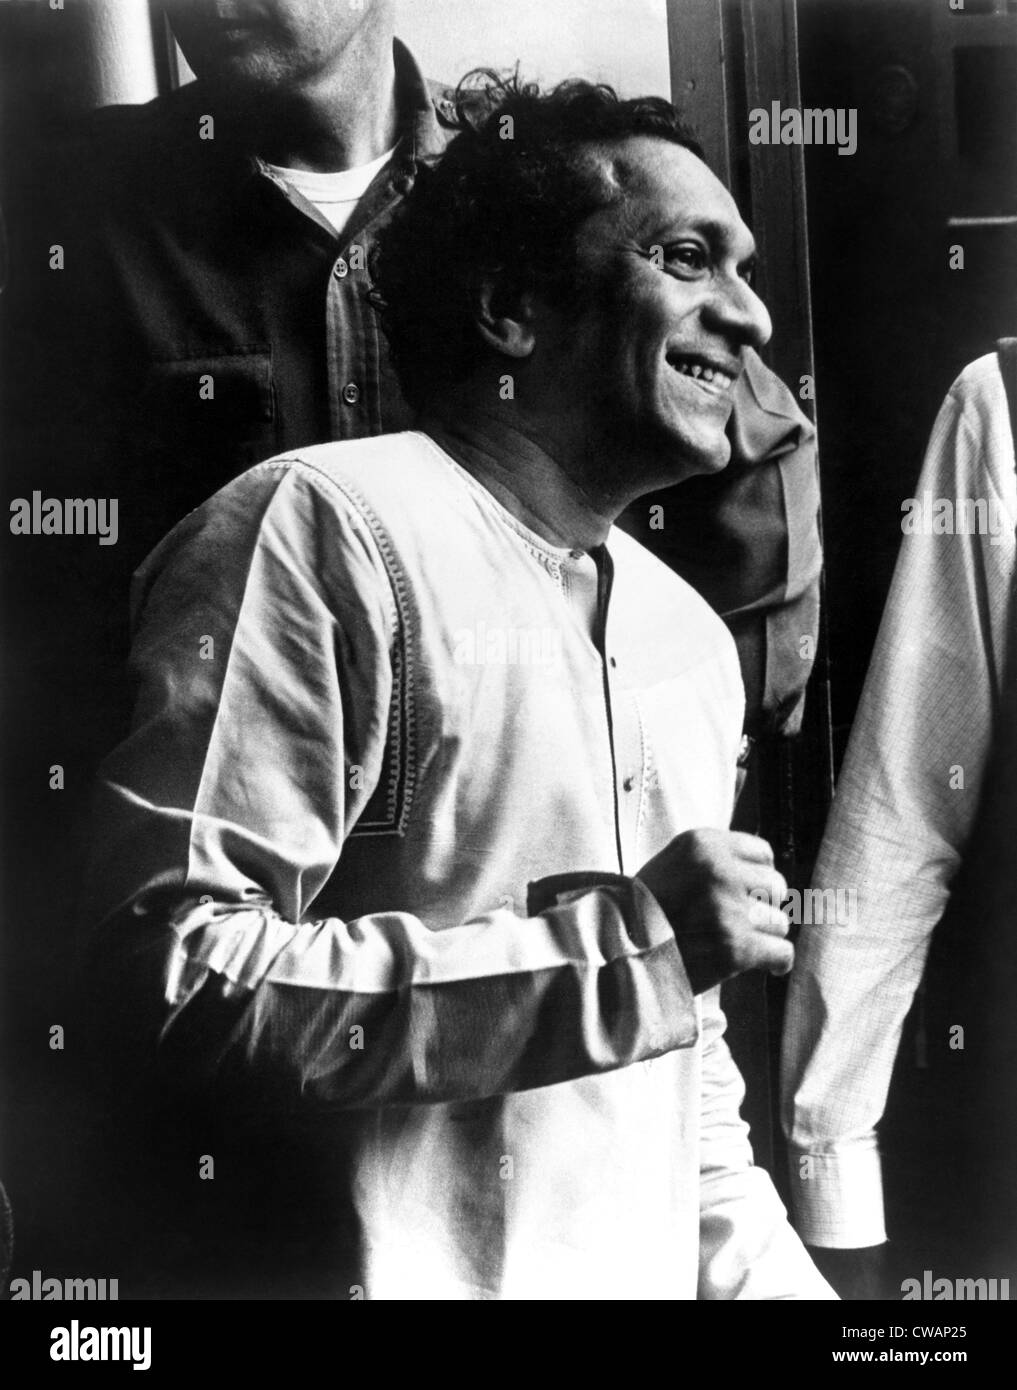 Ravi Shankar, Musiker, Komponist, Performer und Gelehrter, Porträt, 1960er Jahre. Höflichkeit: CSU Archive / Everett Collection Stockfoto